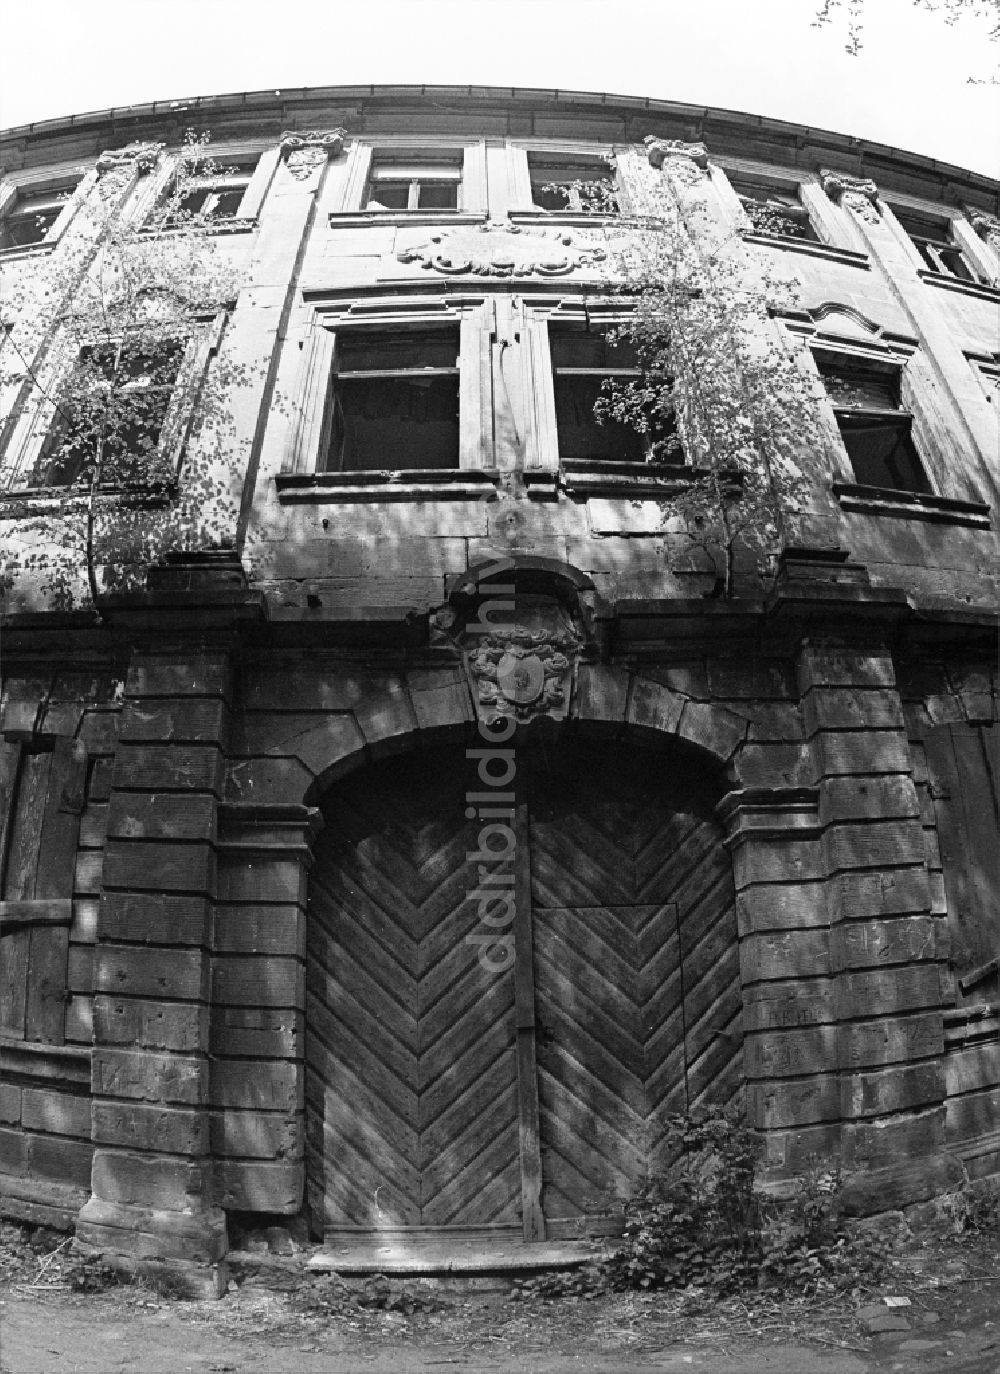 DDR-Fotoarchiv: Halberstadt - Eingangsbereich eines verfallenden Mehrfamilienhaus- Ruine in Halberstadt in Sachsen-Anhalt in der DDR